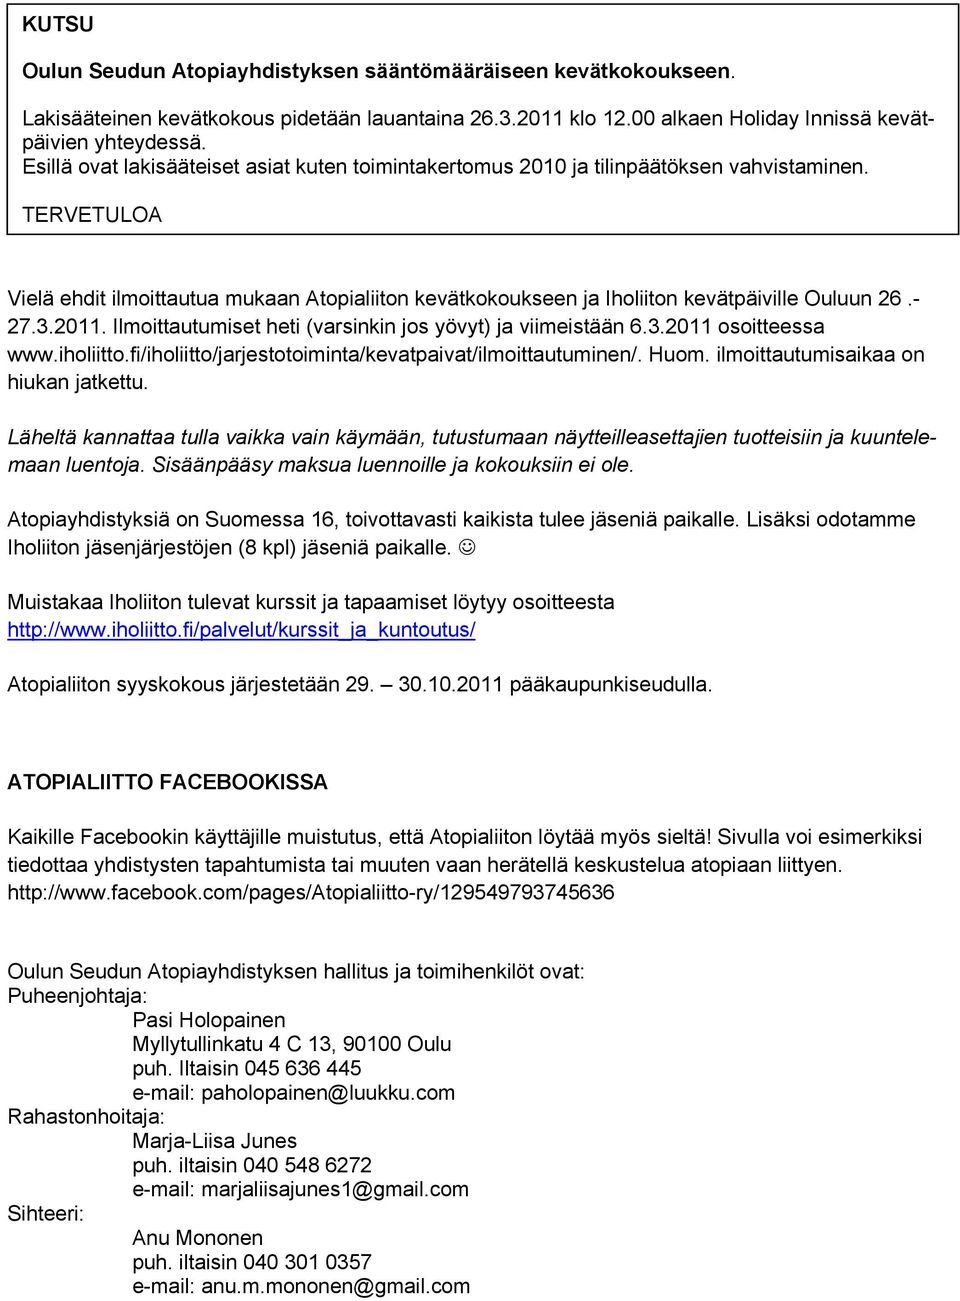 TERVETULOA Vielä ehdit ilmoittautua mukaan Atopialiiton kevätkokoukseen ja Iholiiton kevätpäiville Ouluun 26.- 27.3.2011. Ilmoittautumiset heti (varsinkin jos yövyt) ja viimeistään 6.3.2011 osoitteessa www.